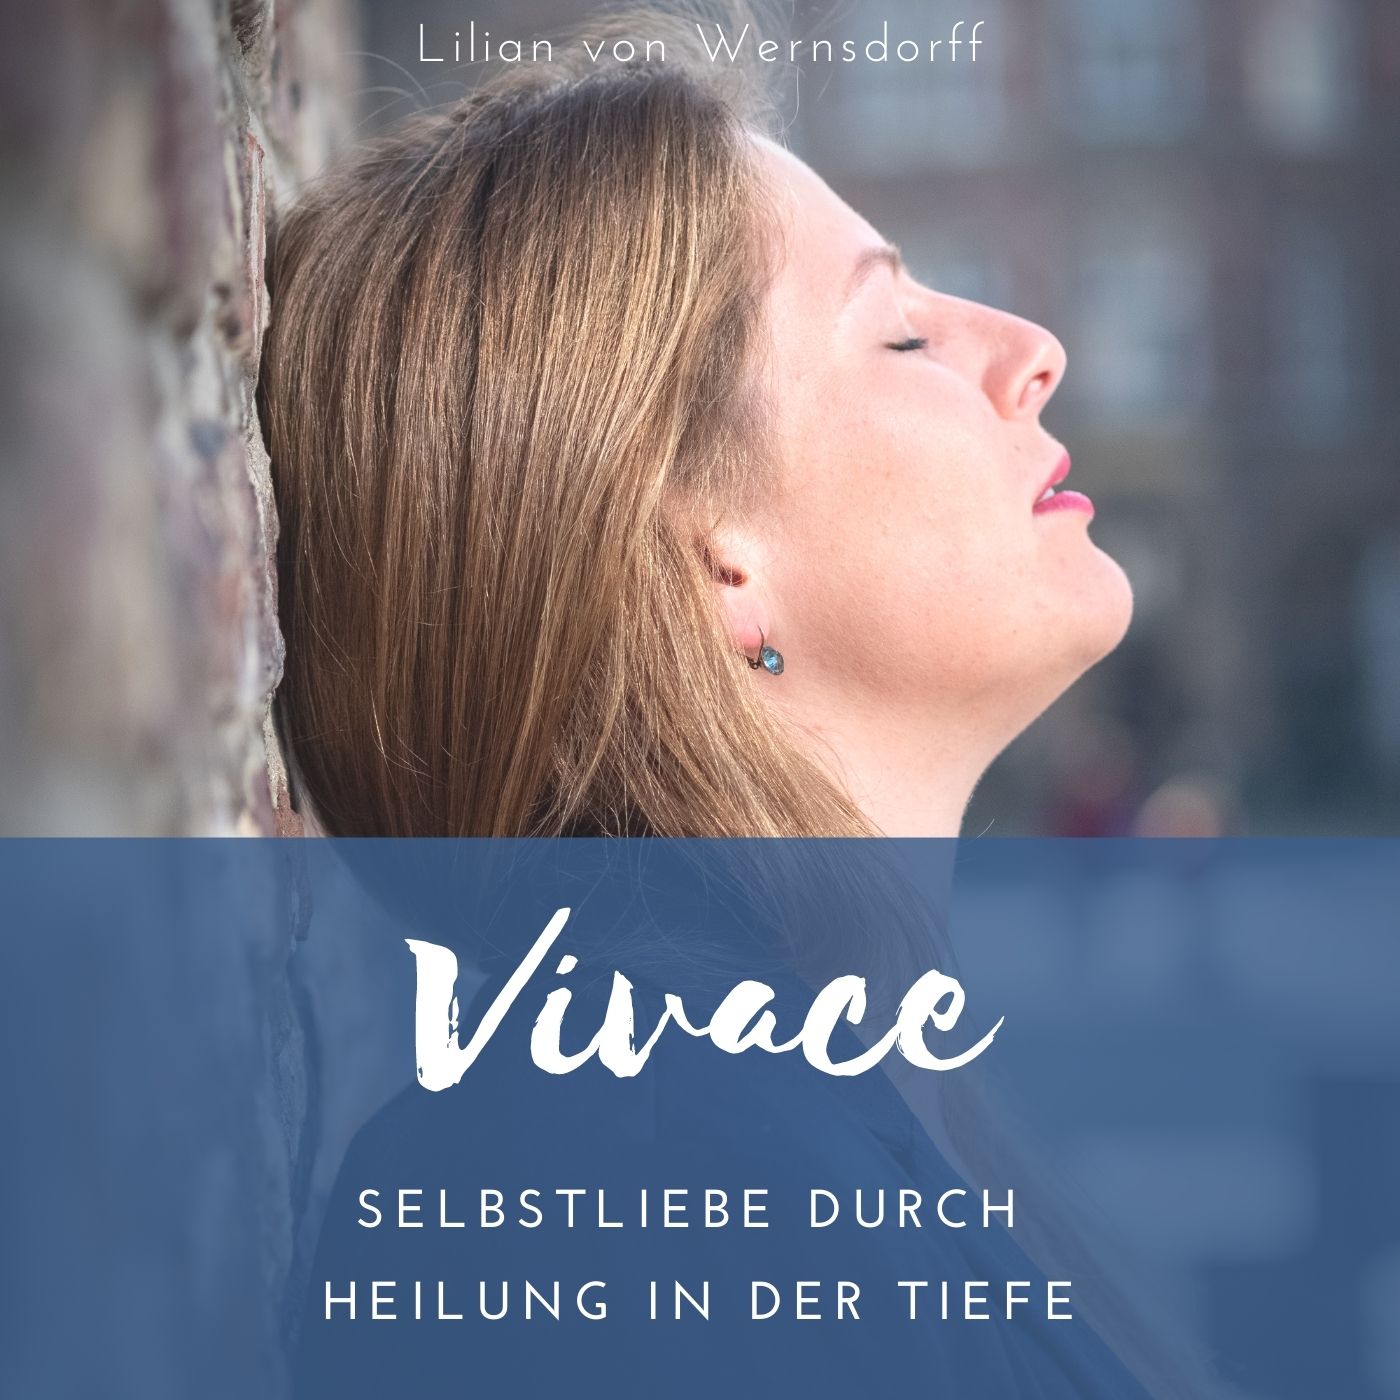 Vivace – Selbstliebe durch Heilung in der Tiefe